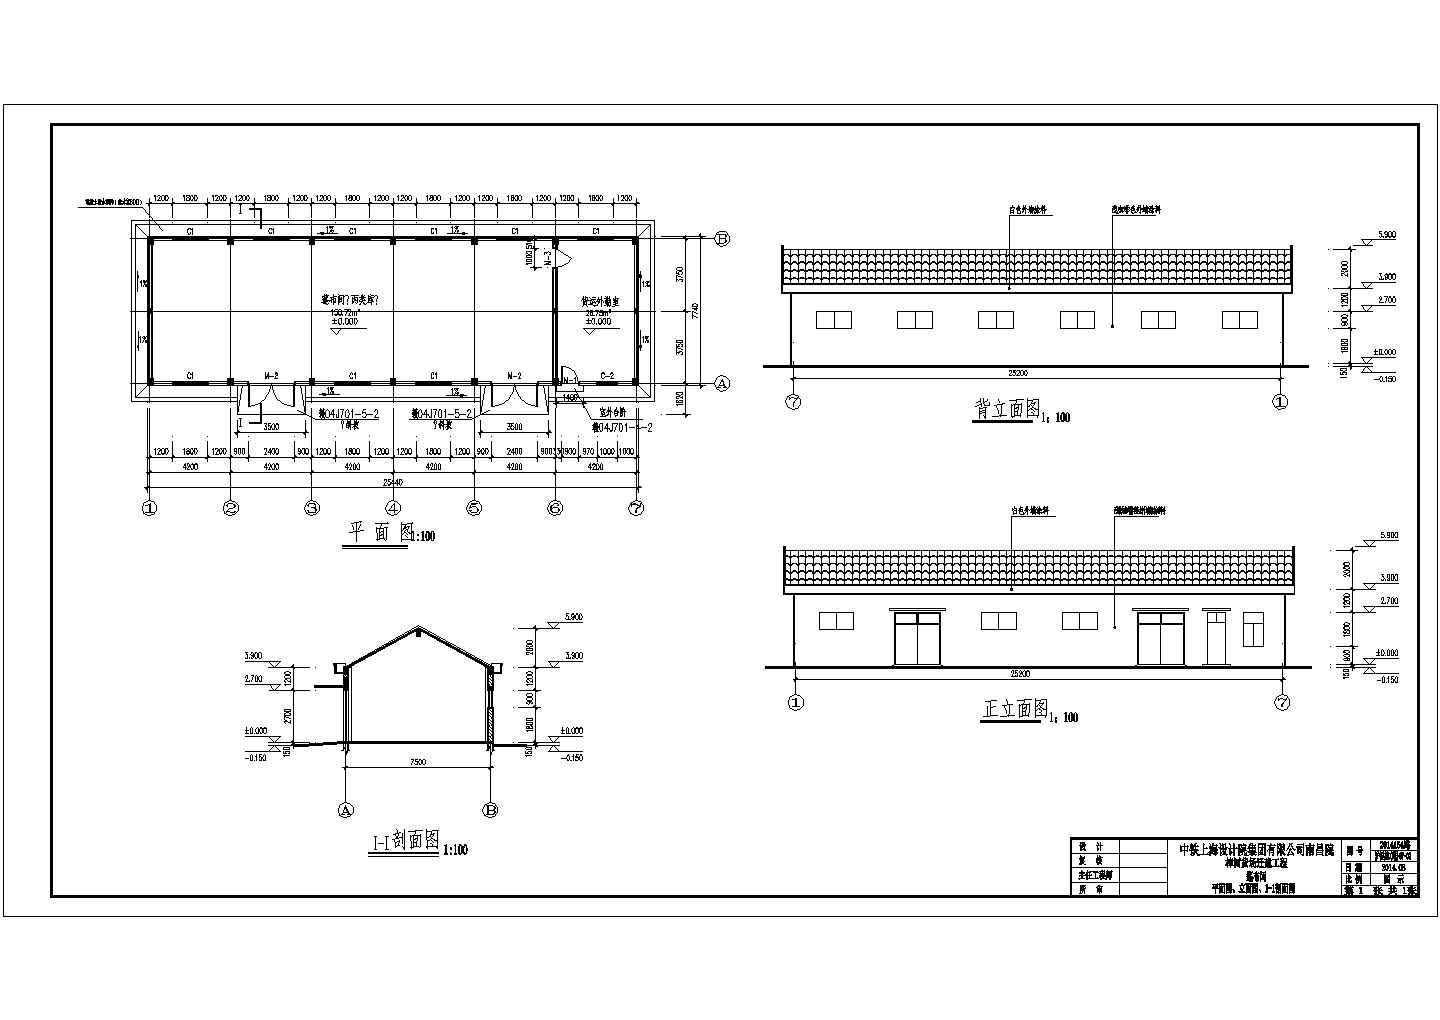 樟树货场迁建工程装卸设备工具房结构设计施工图